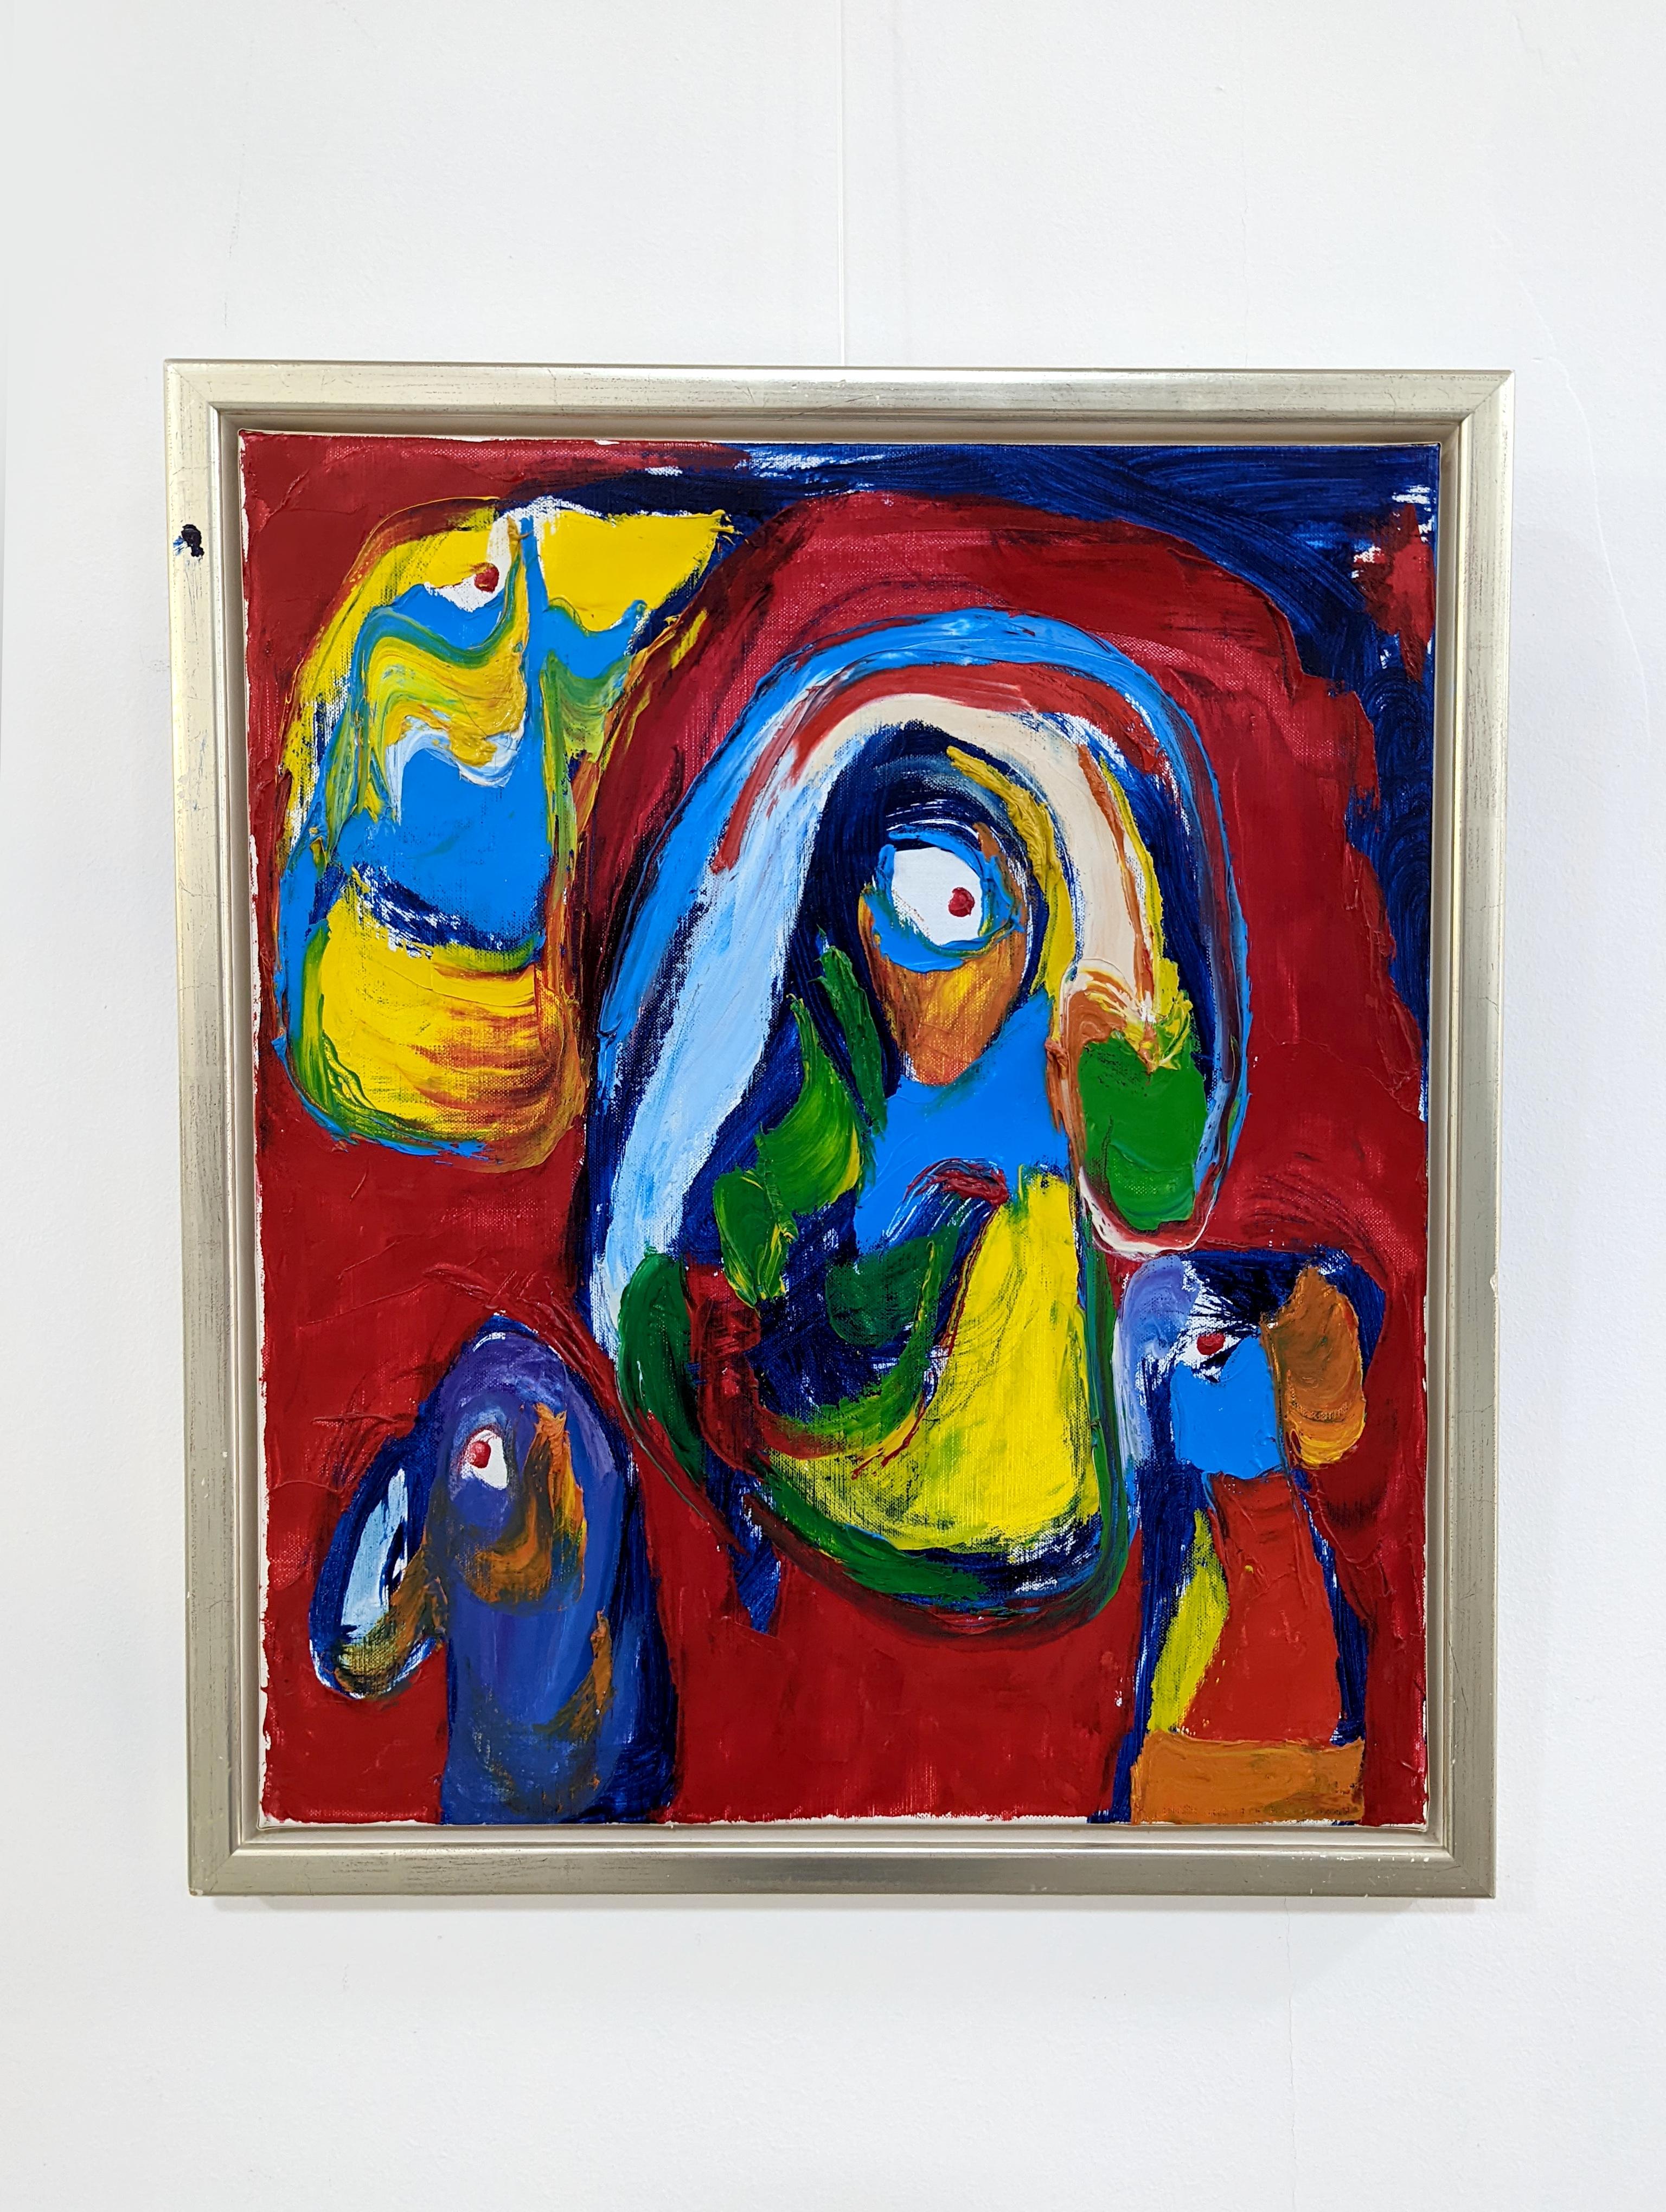 Magnifique œuvre de l'artiste danois Finn Pedersen (1944-2014), né en 1944 à Bornholm. En 1966, il expose avec des artistes du groupe CoBrA tels qu'Asger Jorn et Karel Appel. Son travail est clairement influencé par le style de peinture informel de